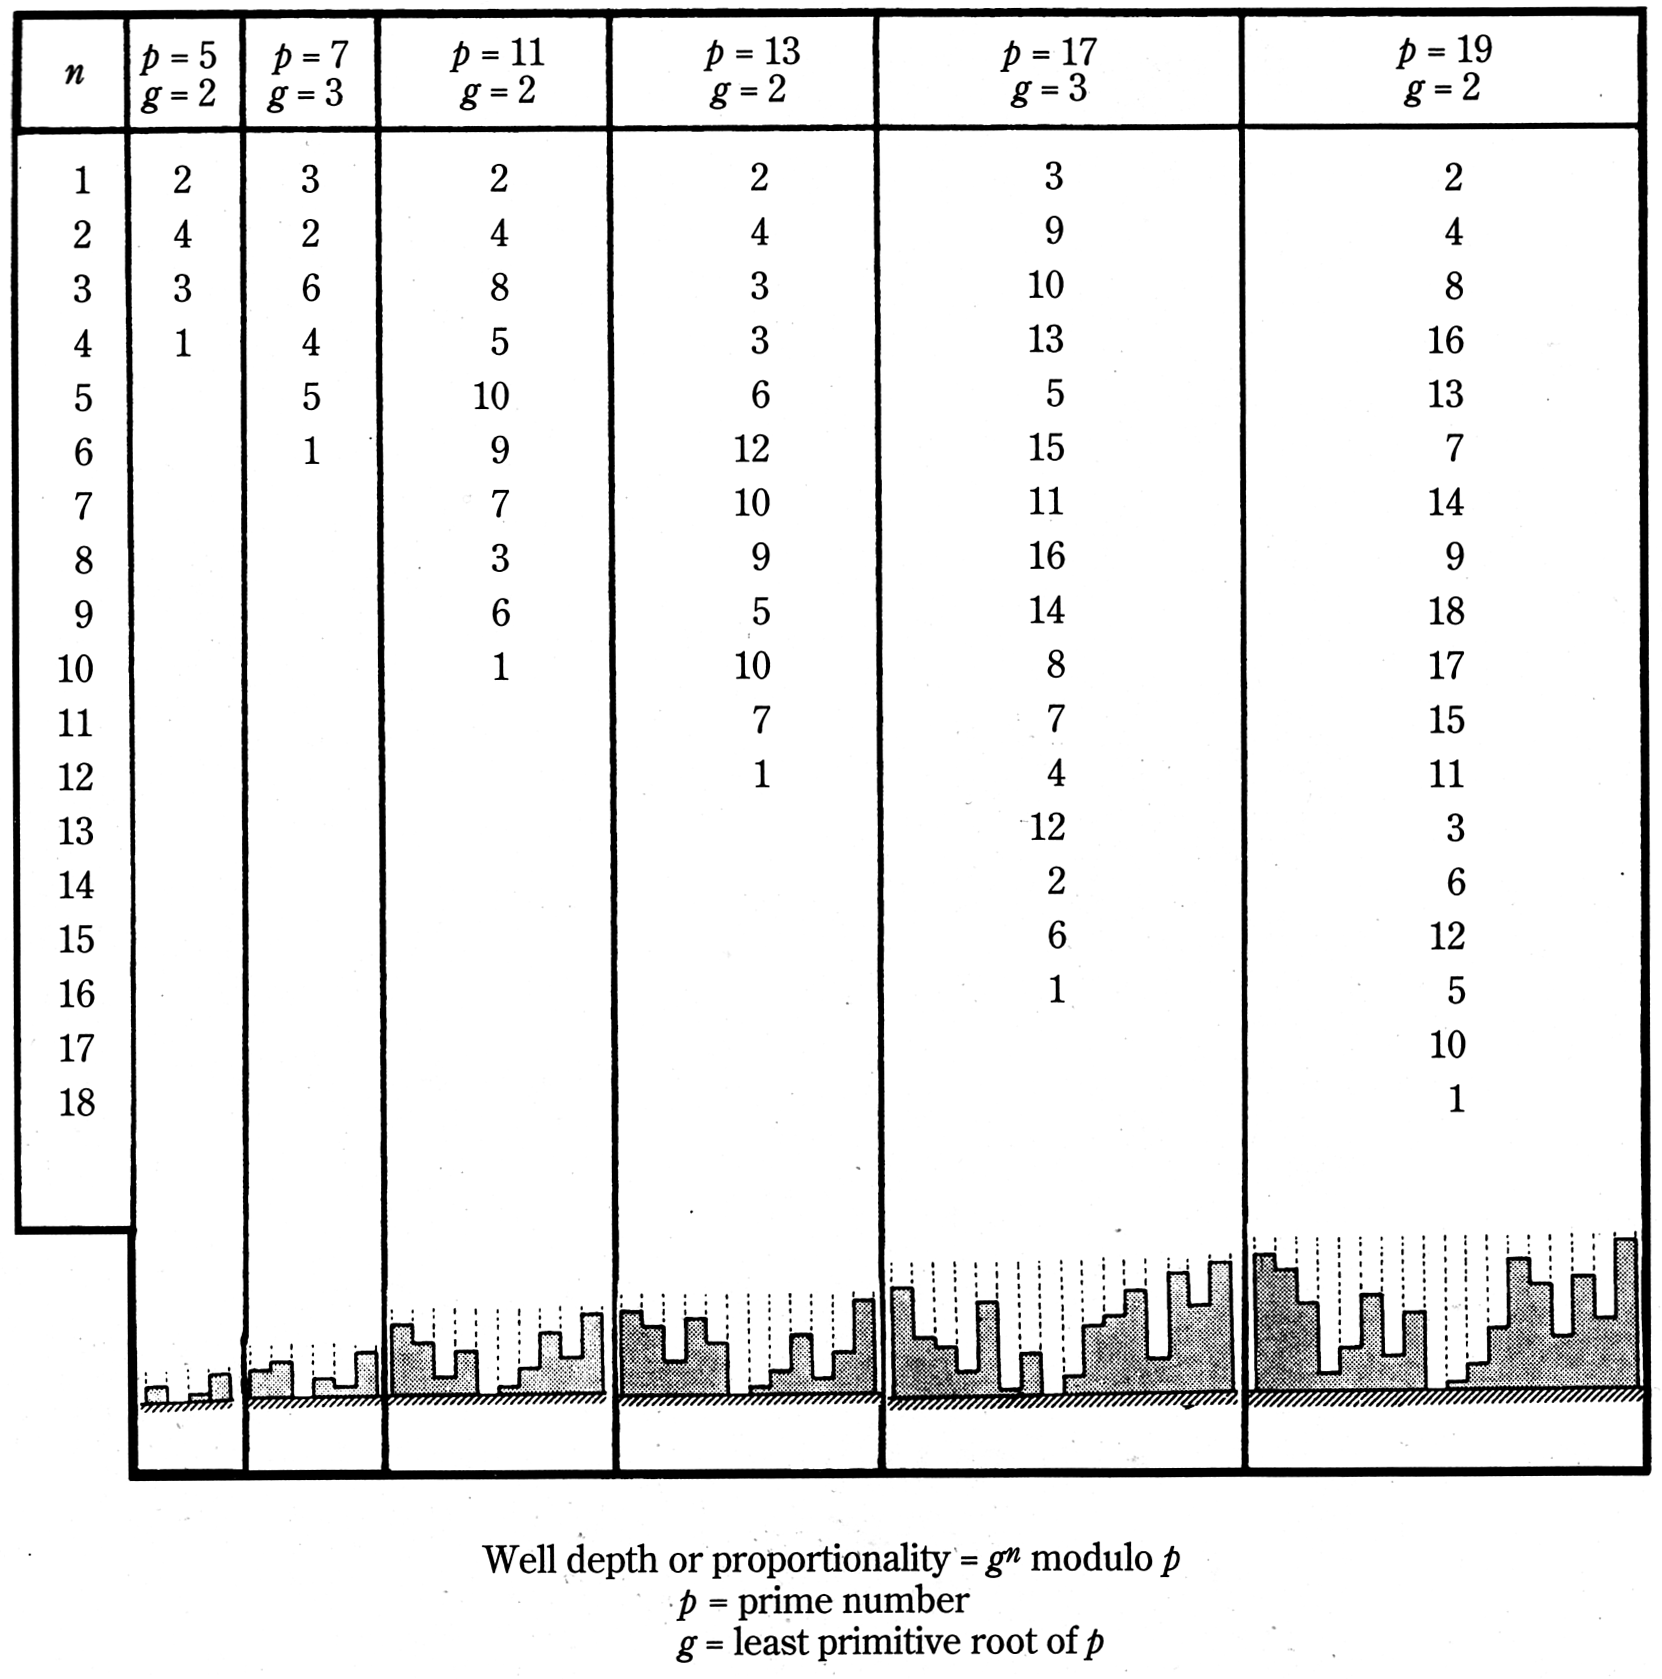 Abbildung 5.4.2.5: Tabelle verschiedener PRD mit den relativen Grabentiefen und einer schematischen Zeichnung des Querschnitts(Everest 2001, S.297)